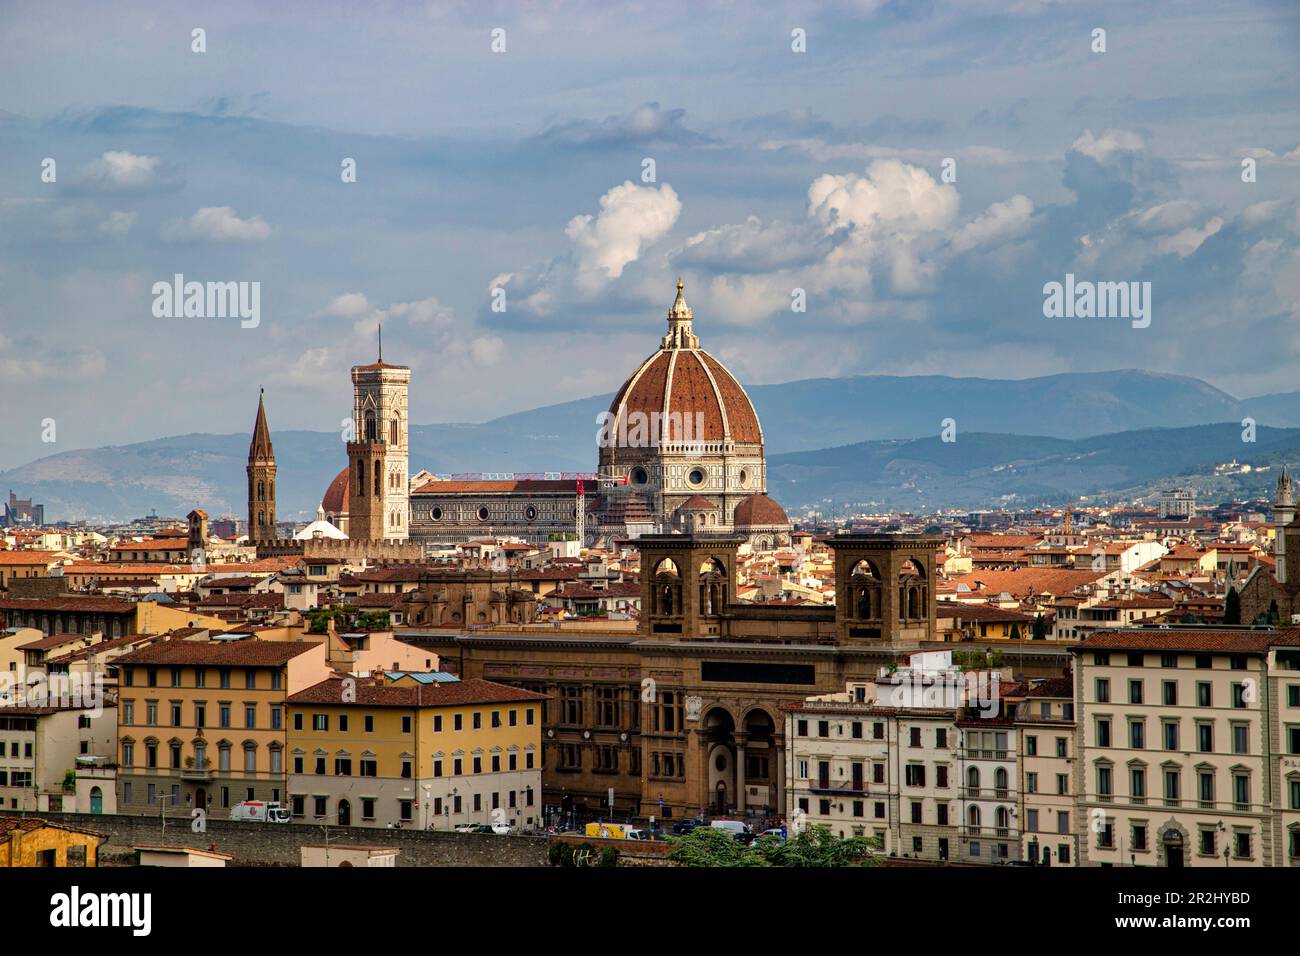 Vue d'ensemble du centre historique de Florence depuis piazzale Michelangelo, Florence, Toscane, Italie. Banque D'Images